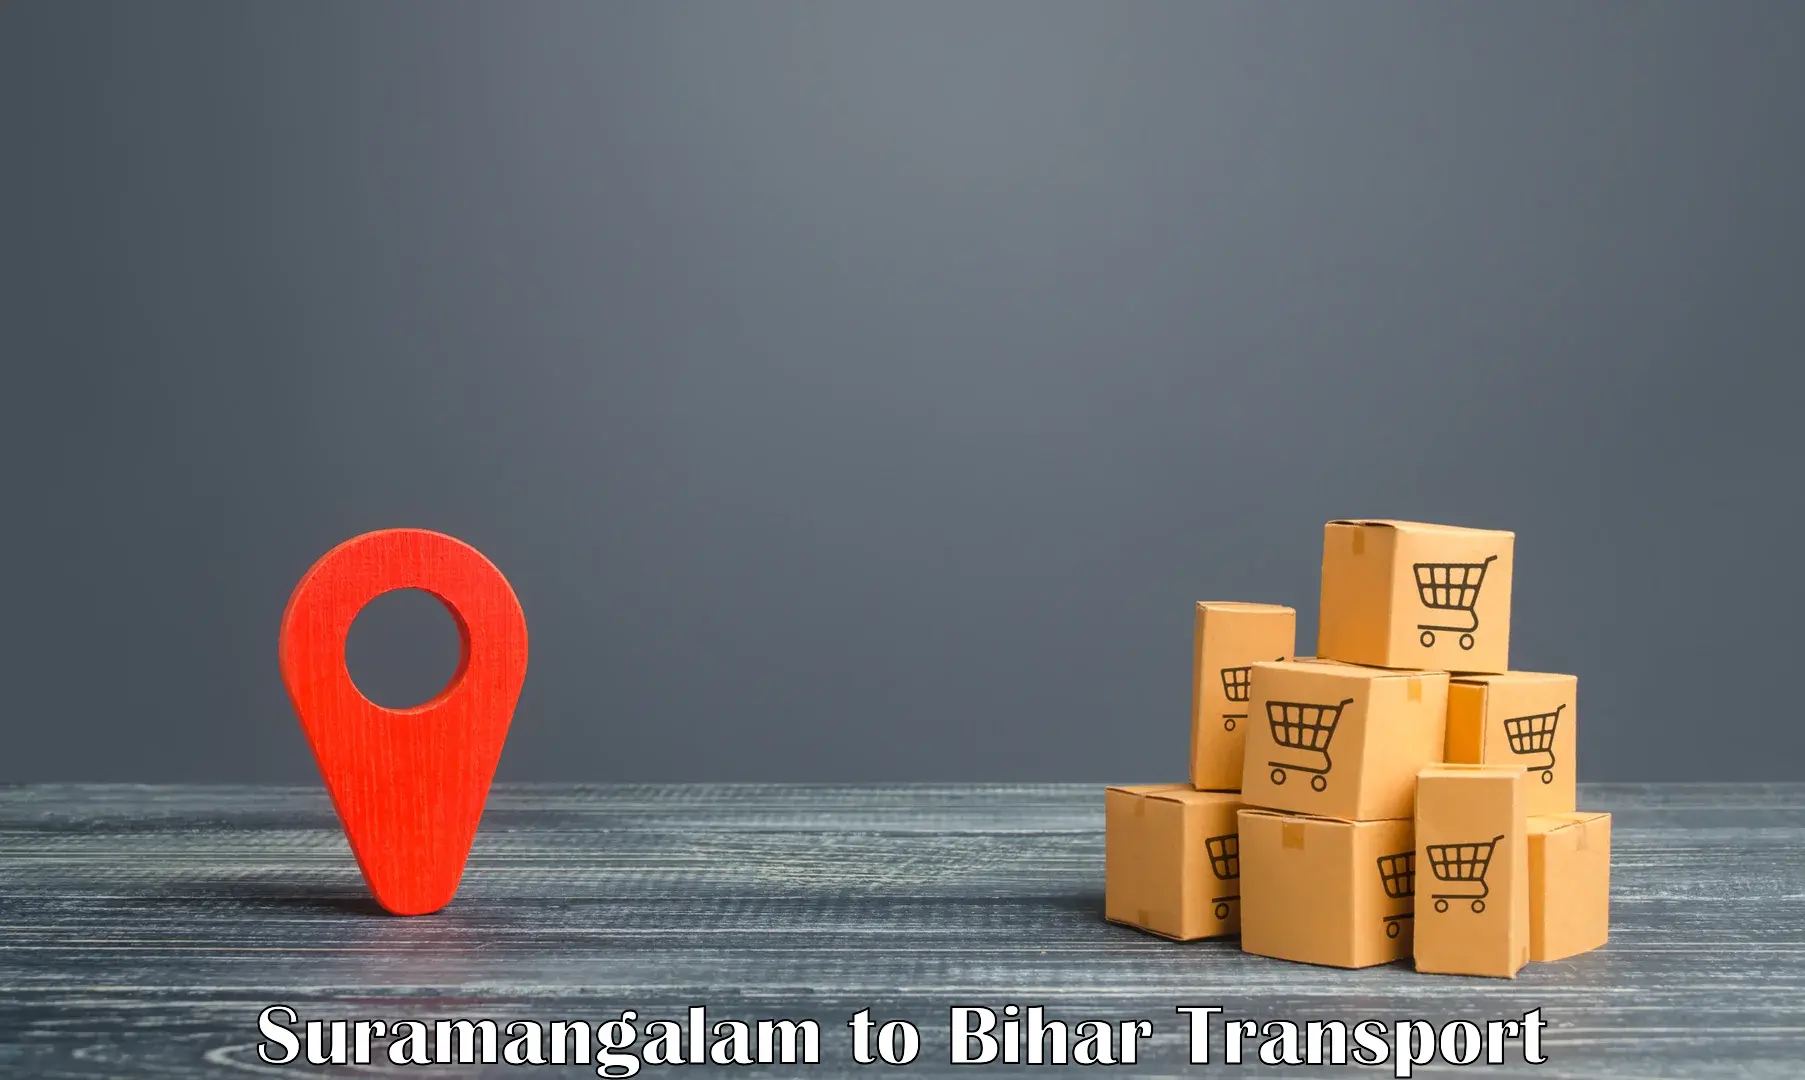 Online transport booking Suramangalam to Bihta